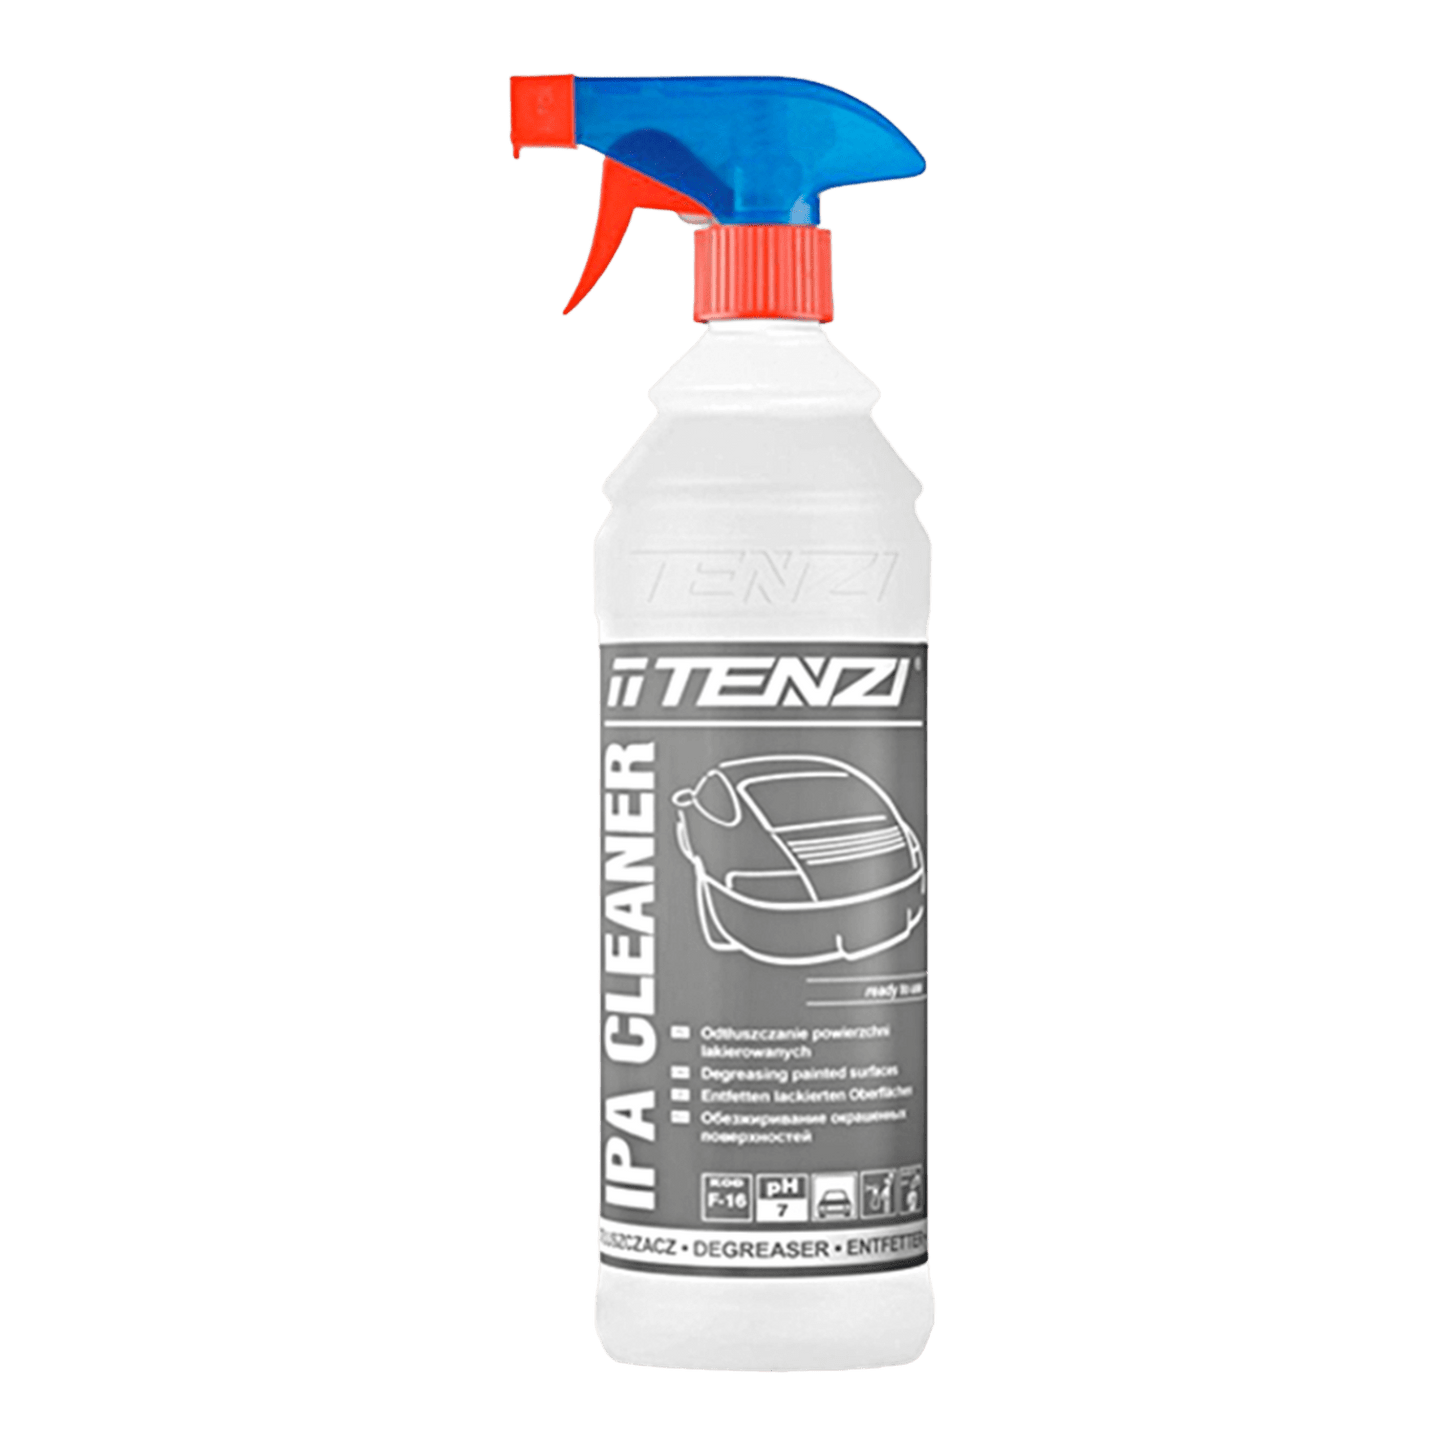 TENZI IPA Cleaner pH Neutral